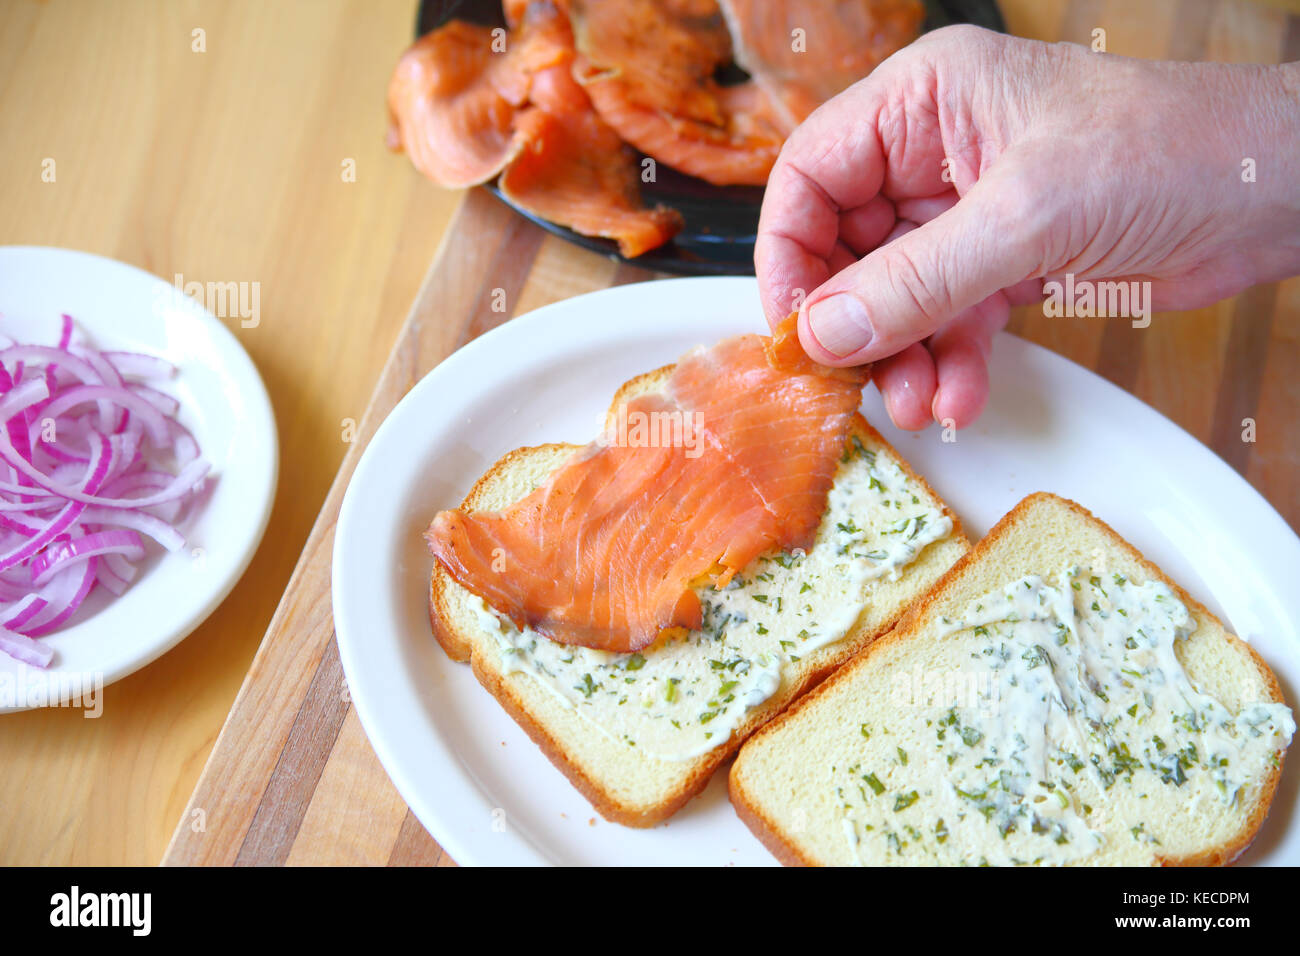 Un homme met sur pied un sandwich de saumon fumé et l'oignon sur le pain avec la mayonnaise aux fines herbes Banque D'Images